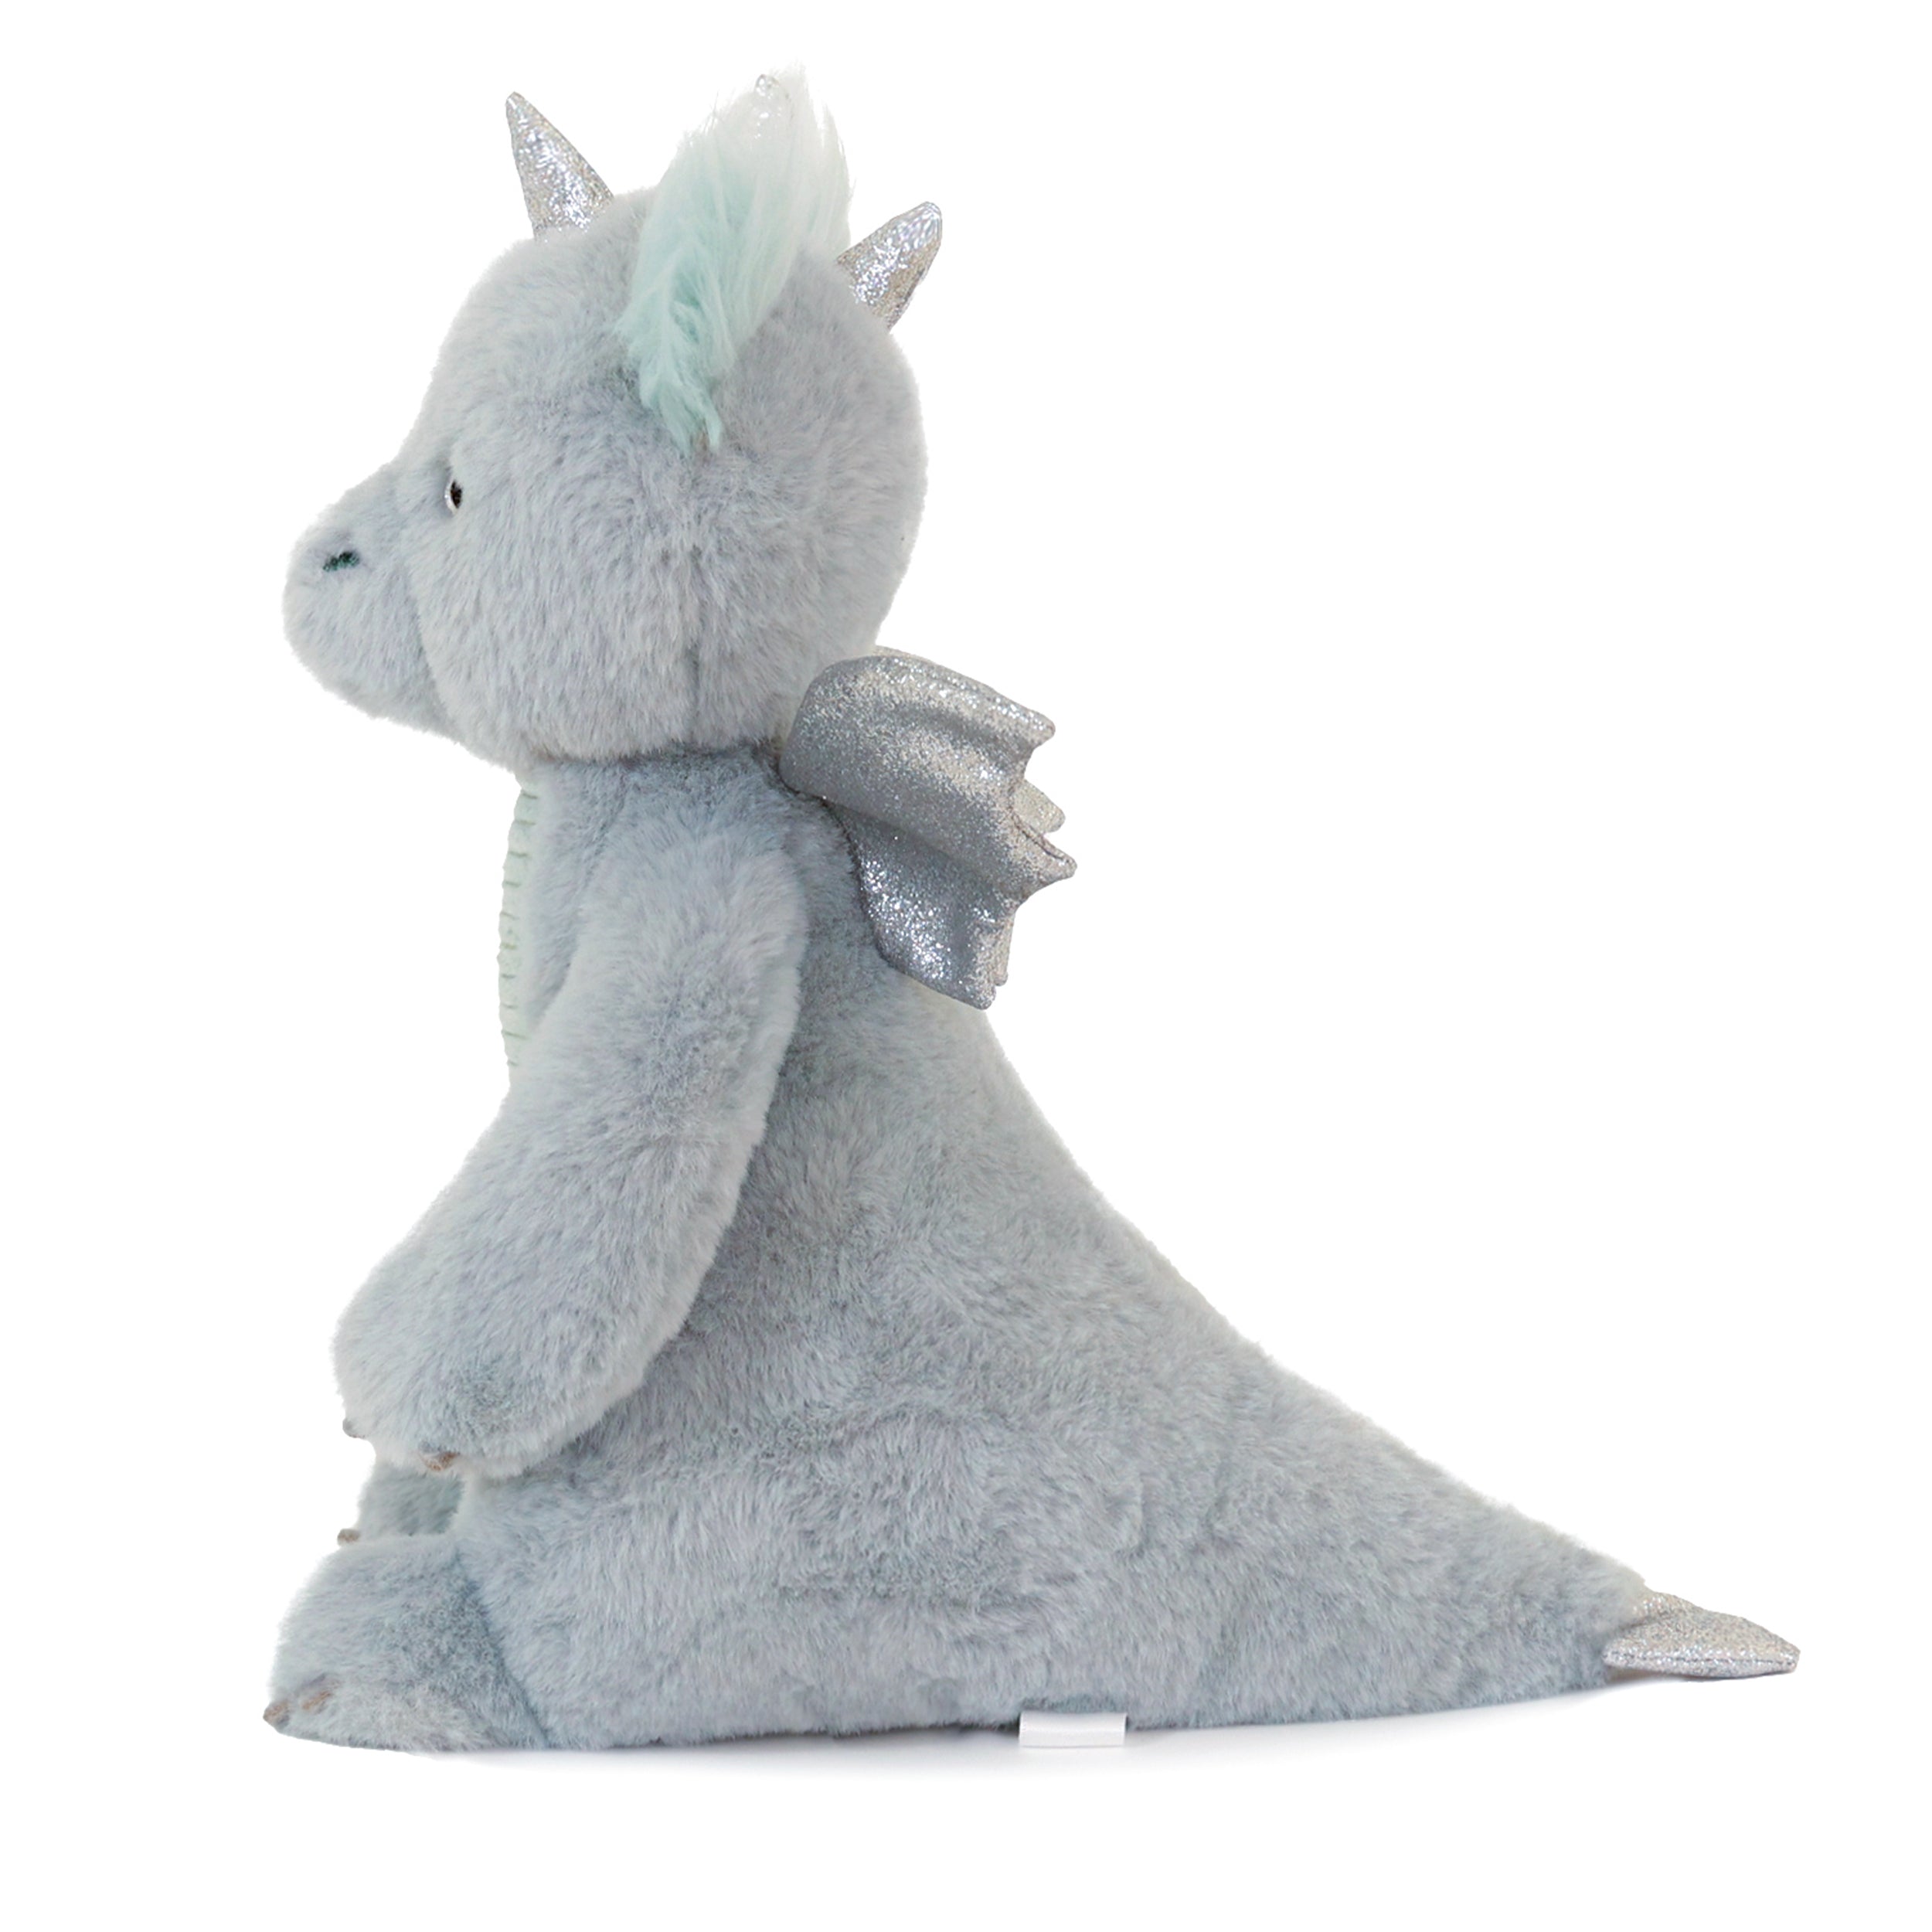 OB Designs Luna Dragon Soft Toy